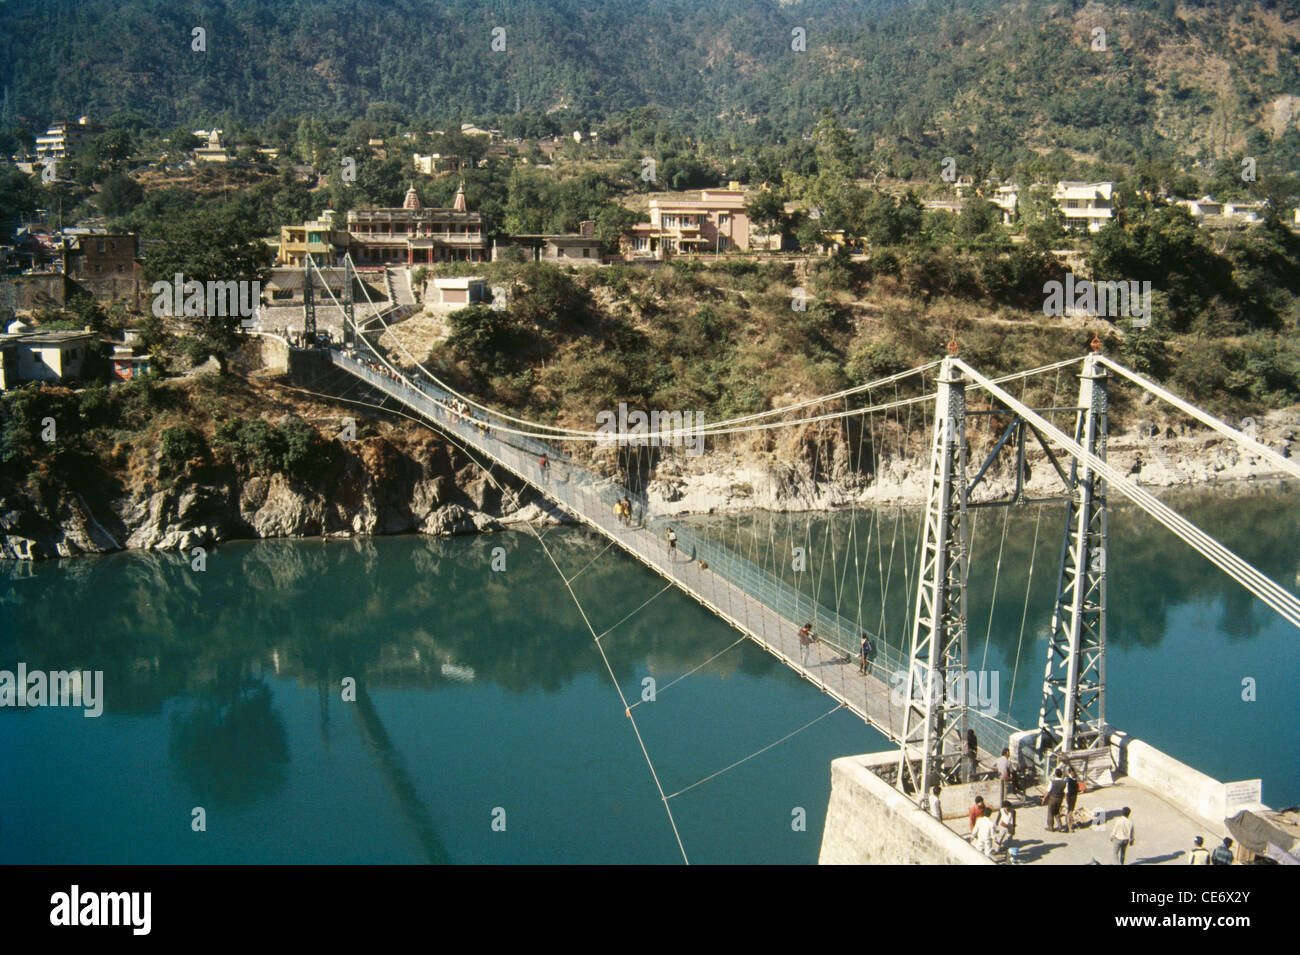 Le pont suspendu de Lakshman jhoola Rishikesh Inde Uttar Pradesh Banque D'Images